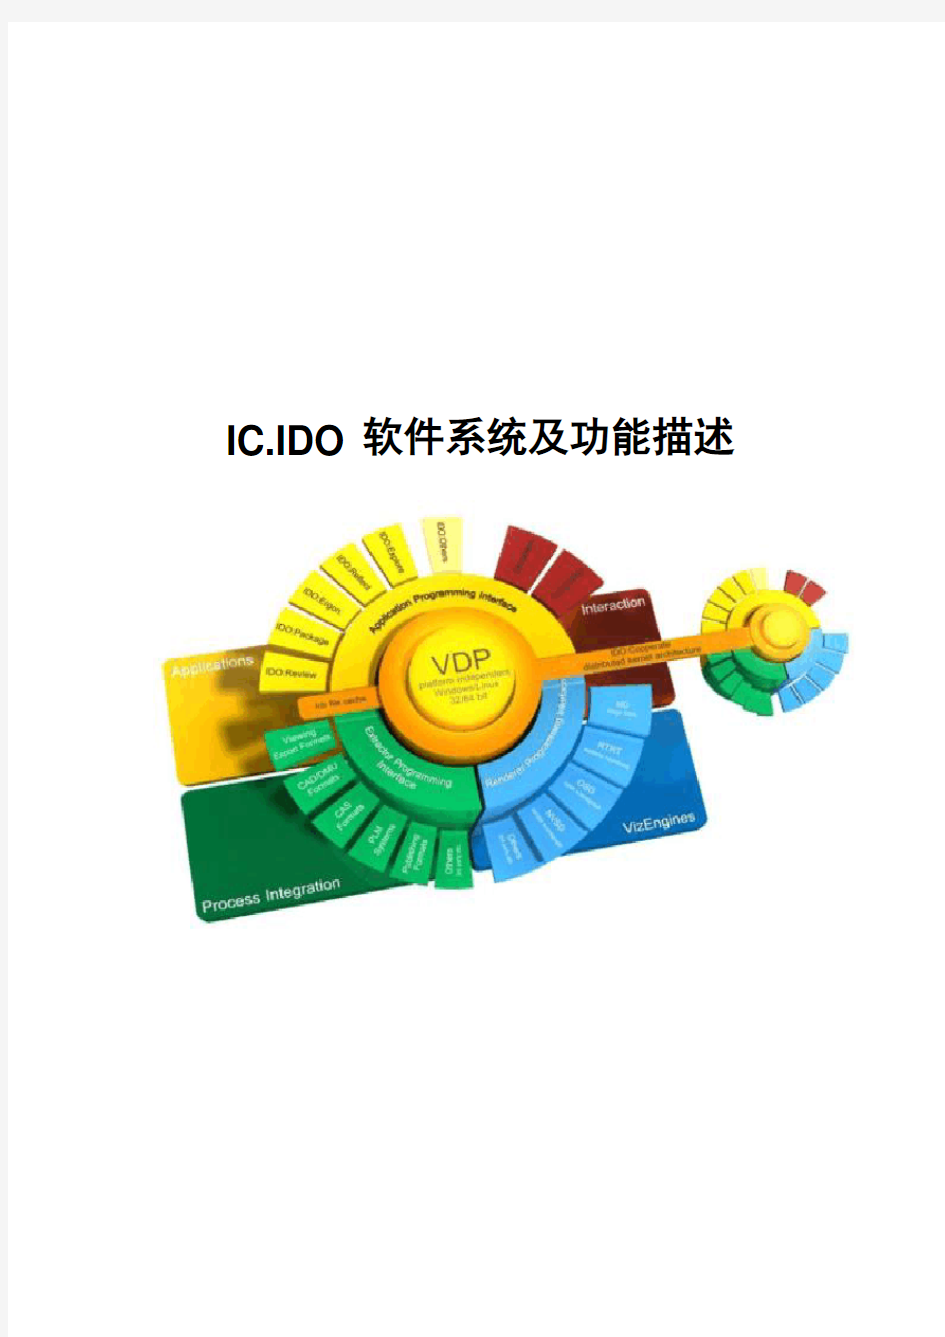 ICIDO软件功能描述